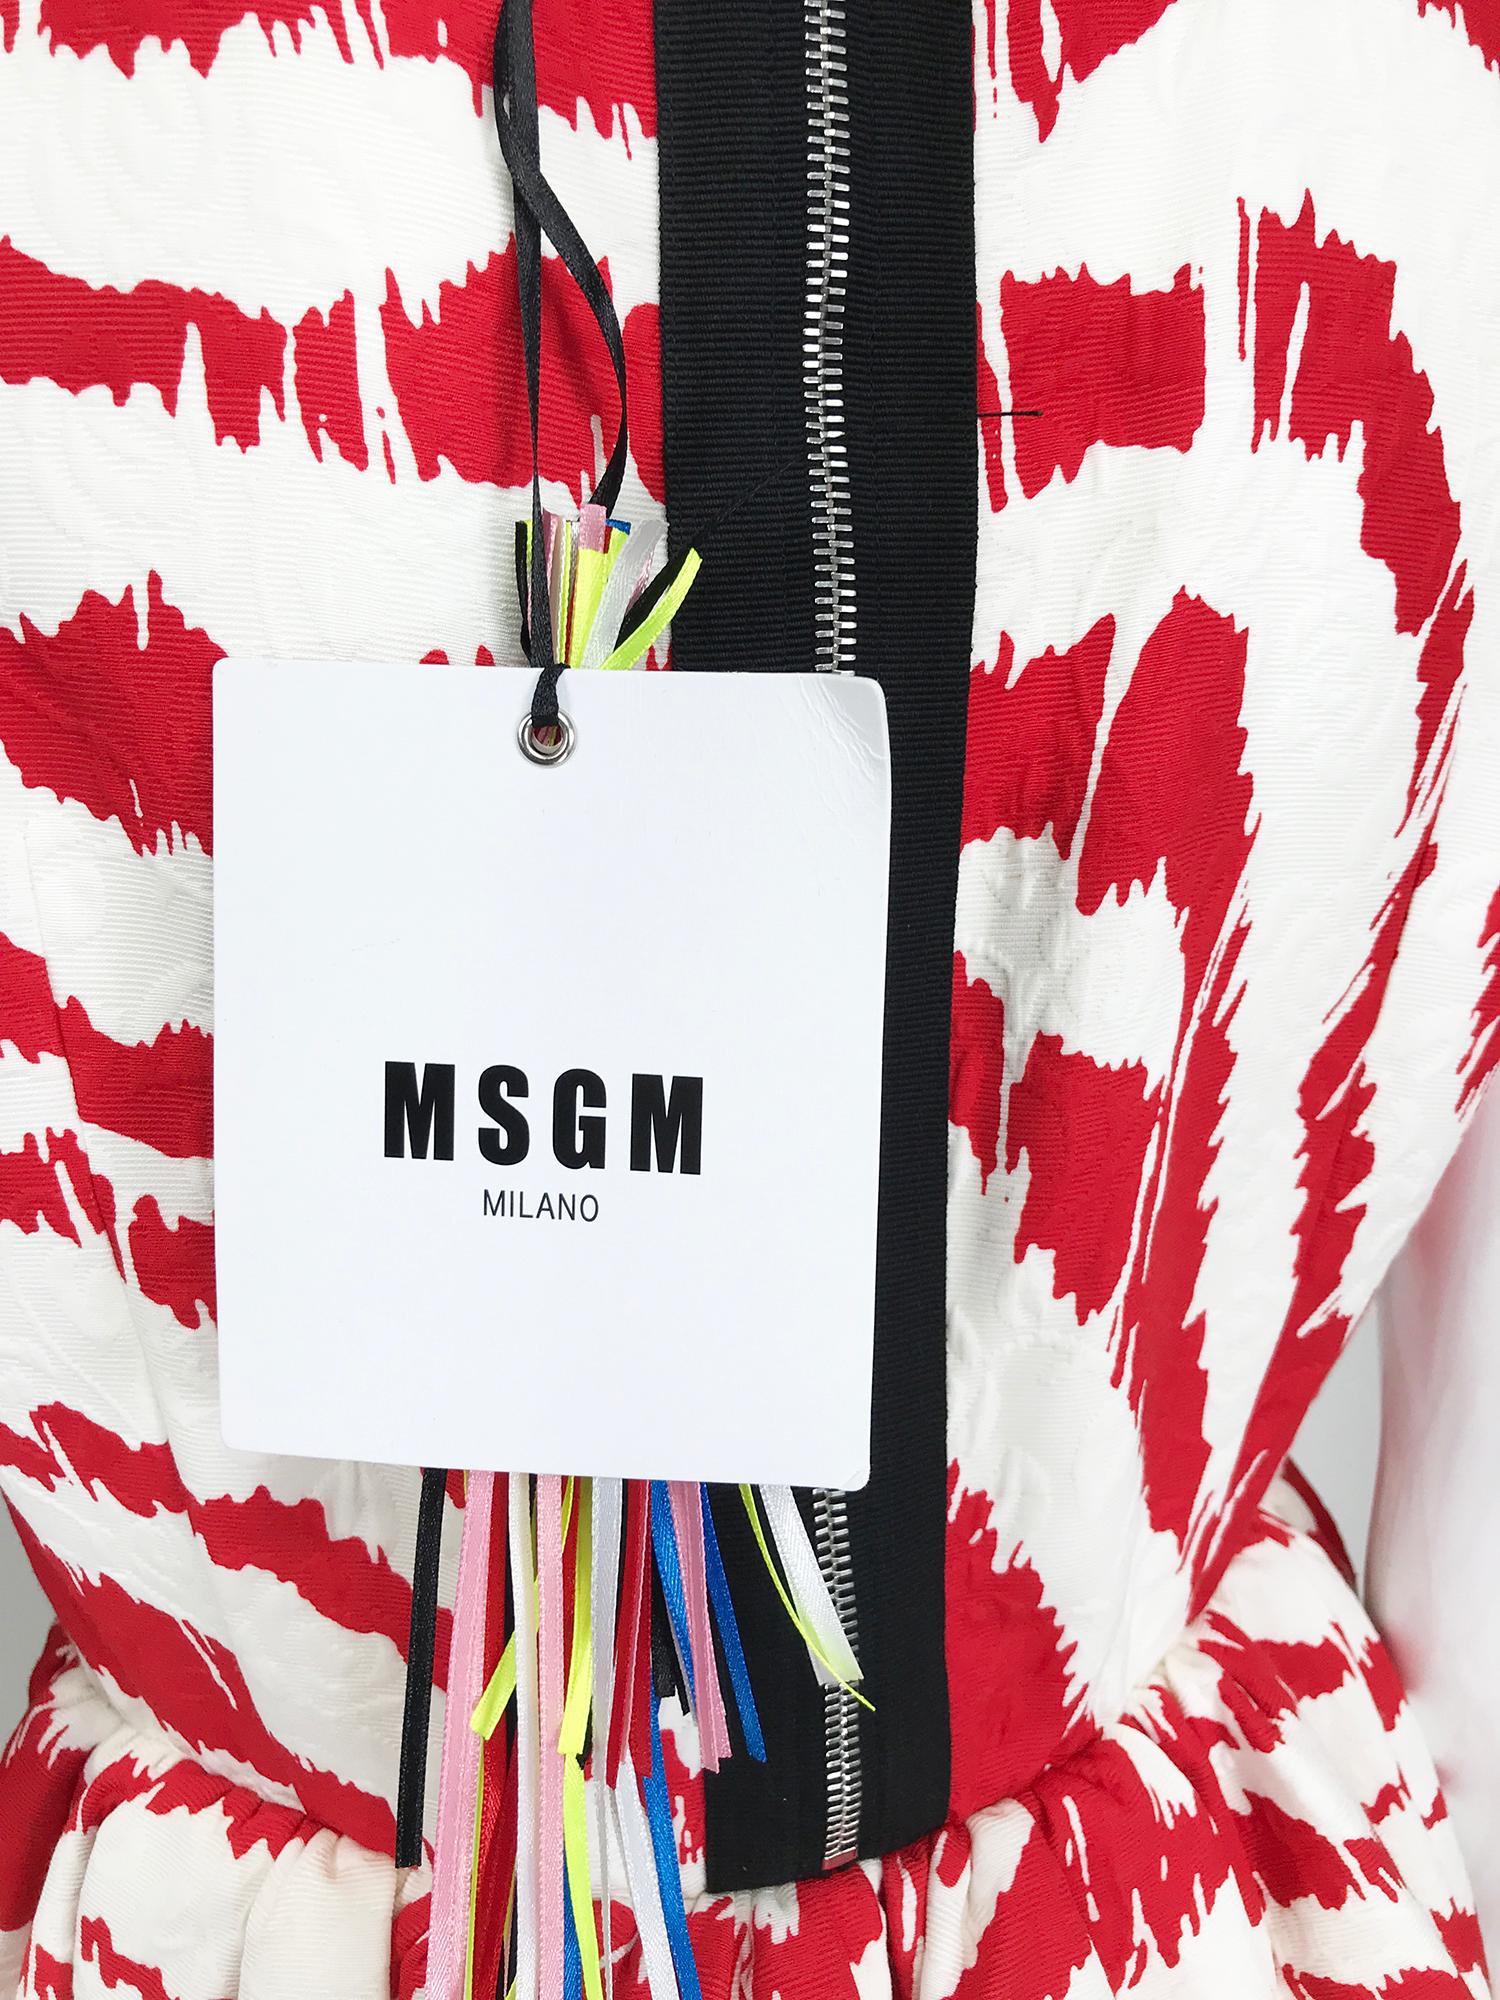 MSGN Milano Red & White Zebra Print Dress NWT 3